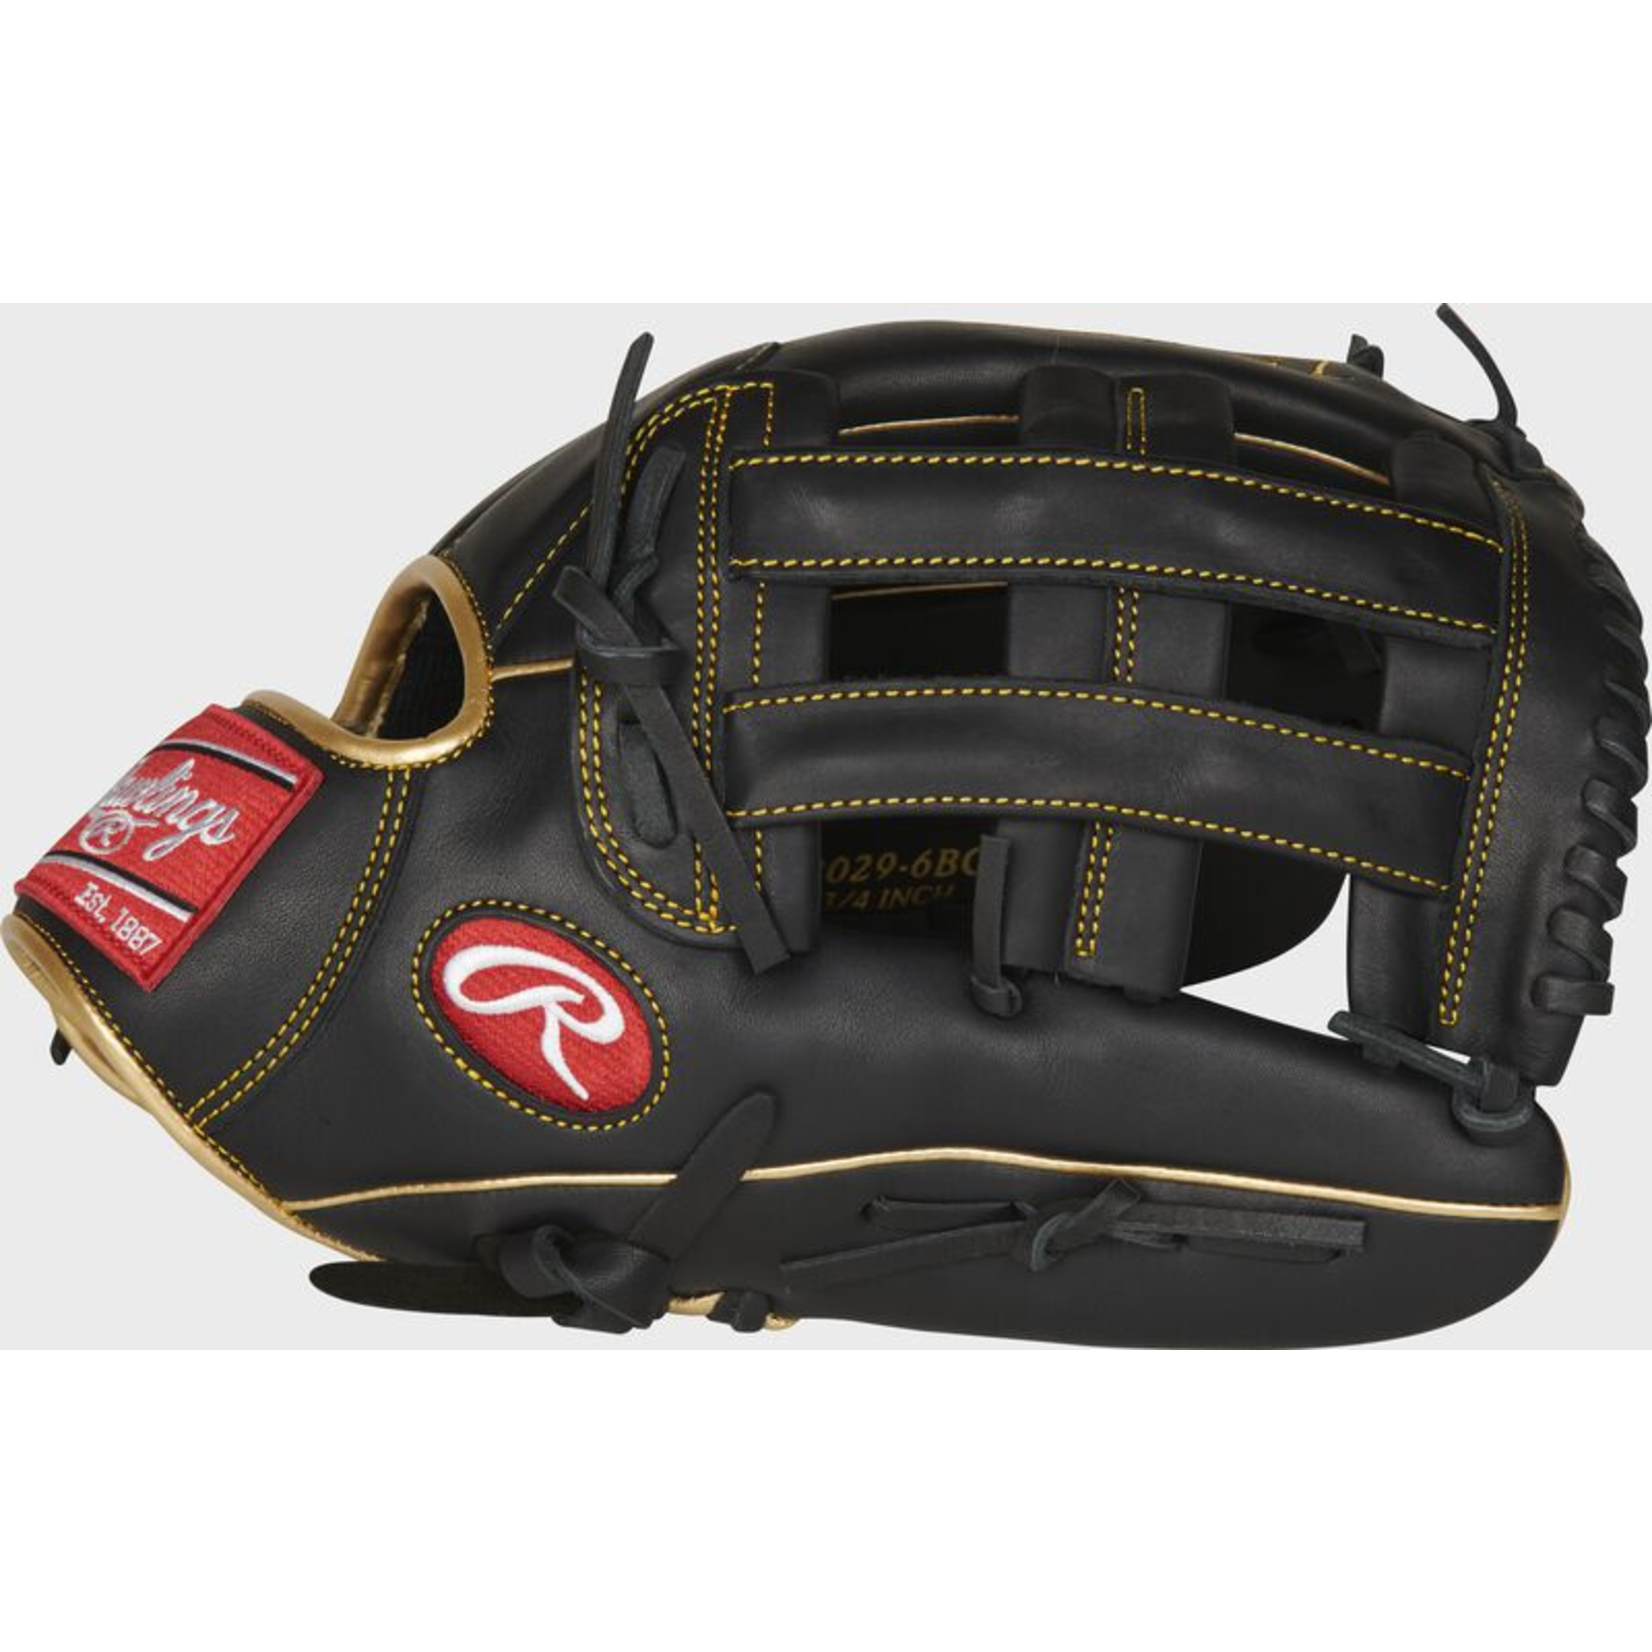 Rawlings Rawlings Baseball Glove, R9 Series, R93029-6BG, 12.75”, Reg